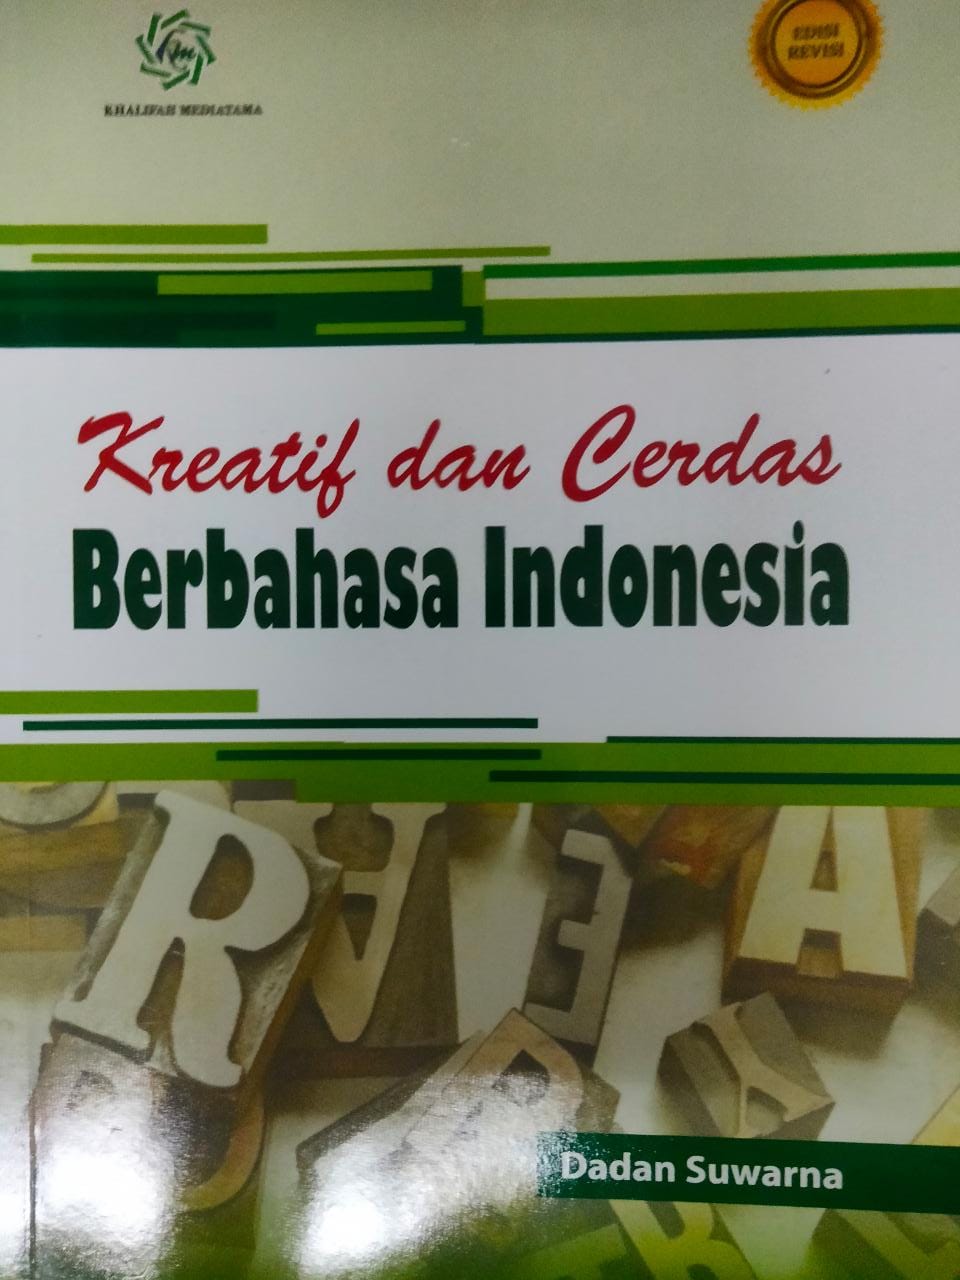 Kreatif dan cerdas berbahasa Indonesia